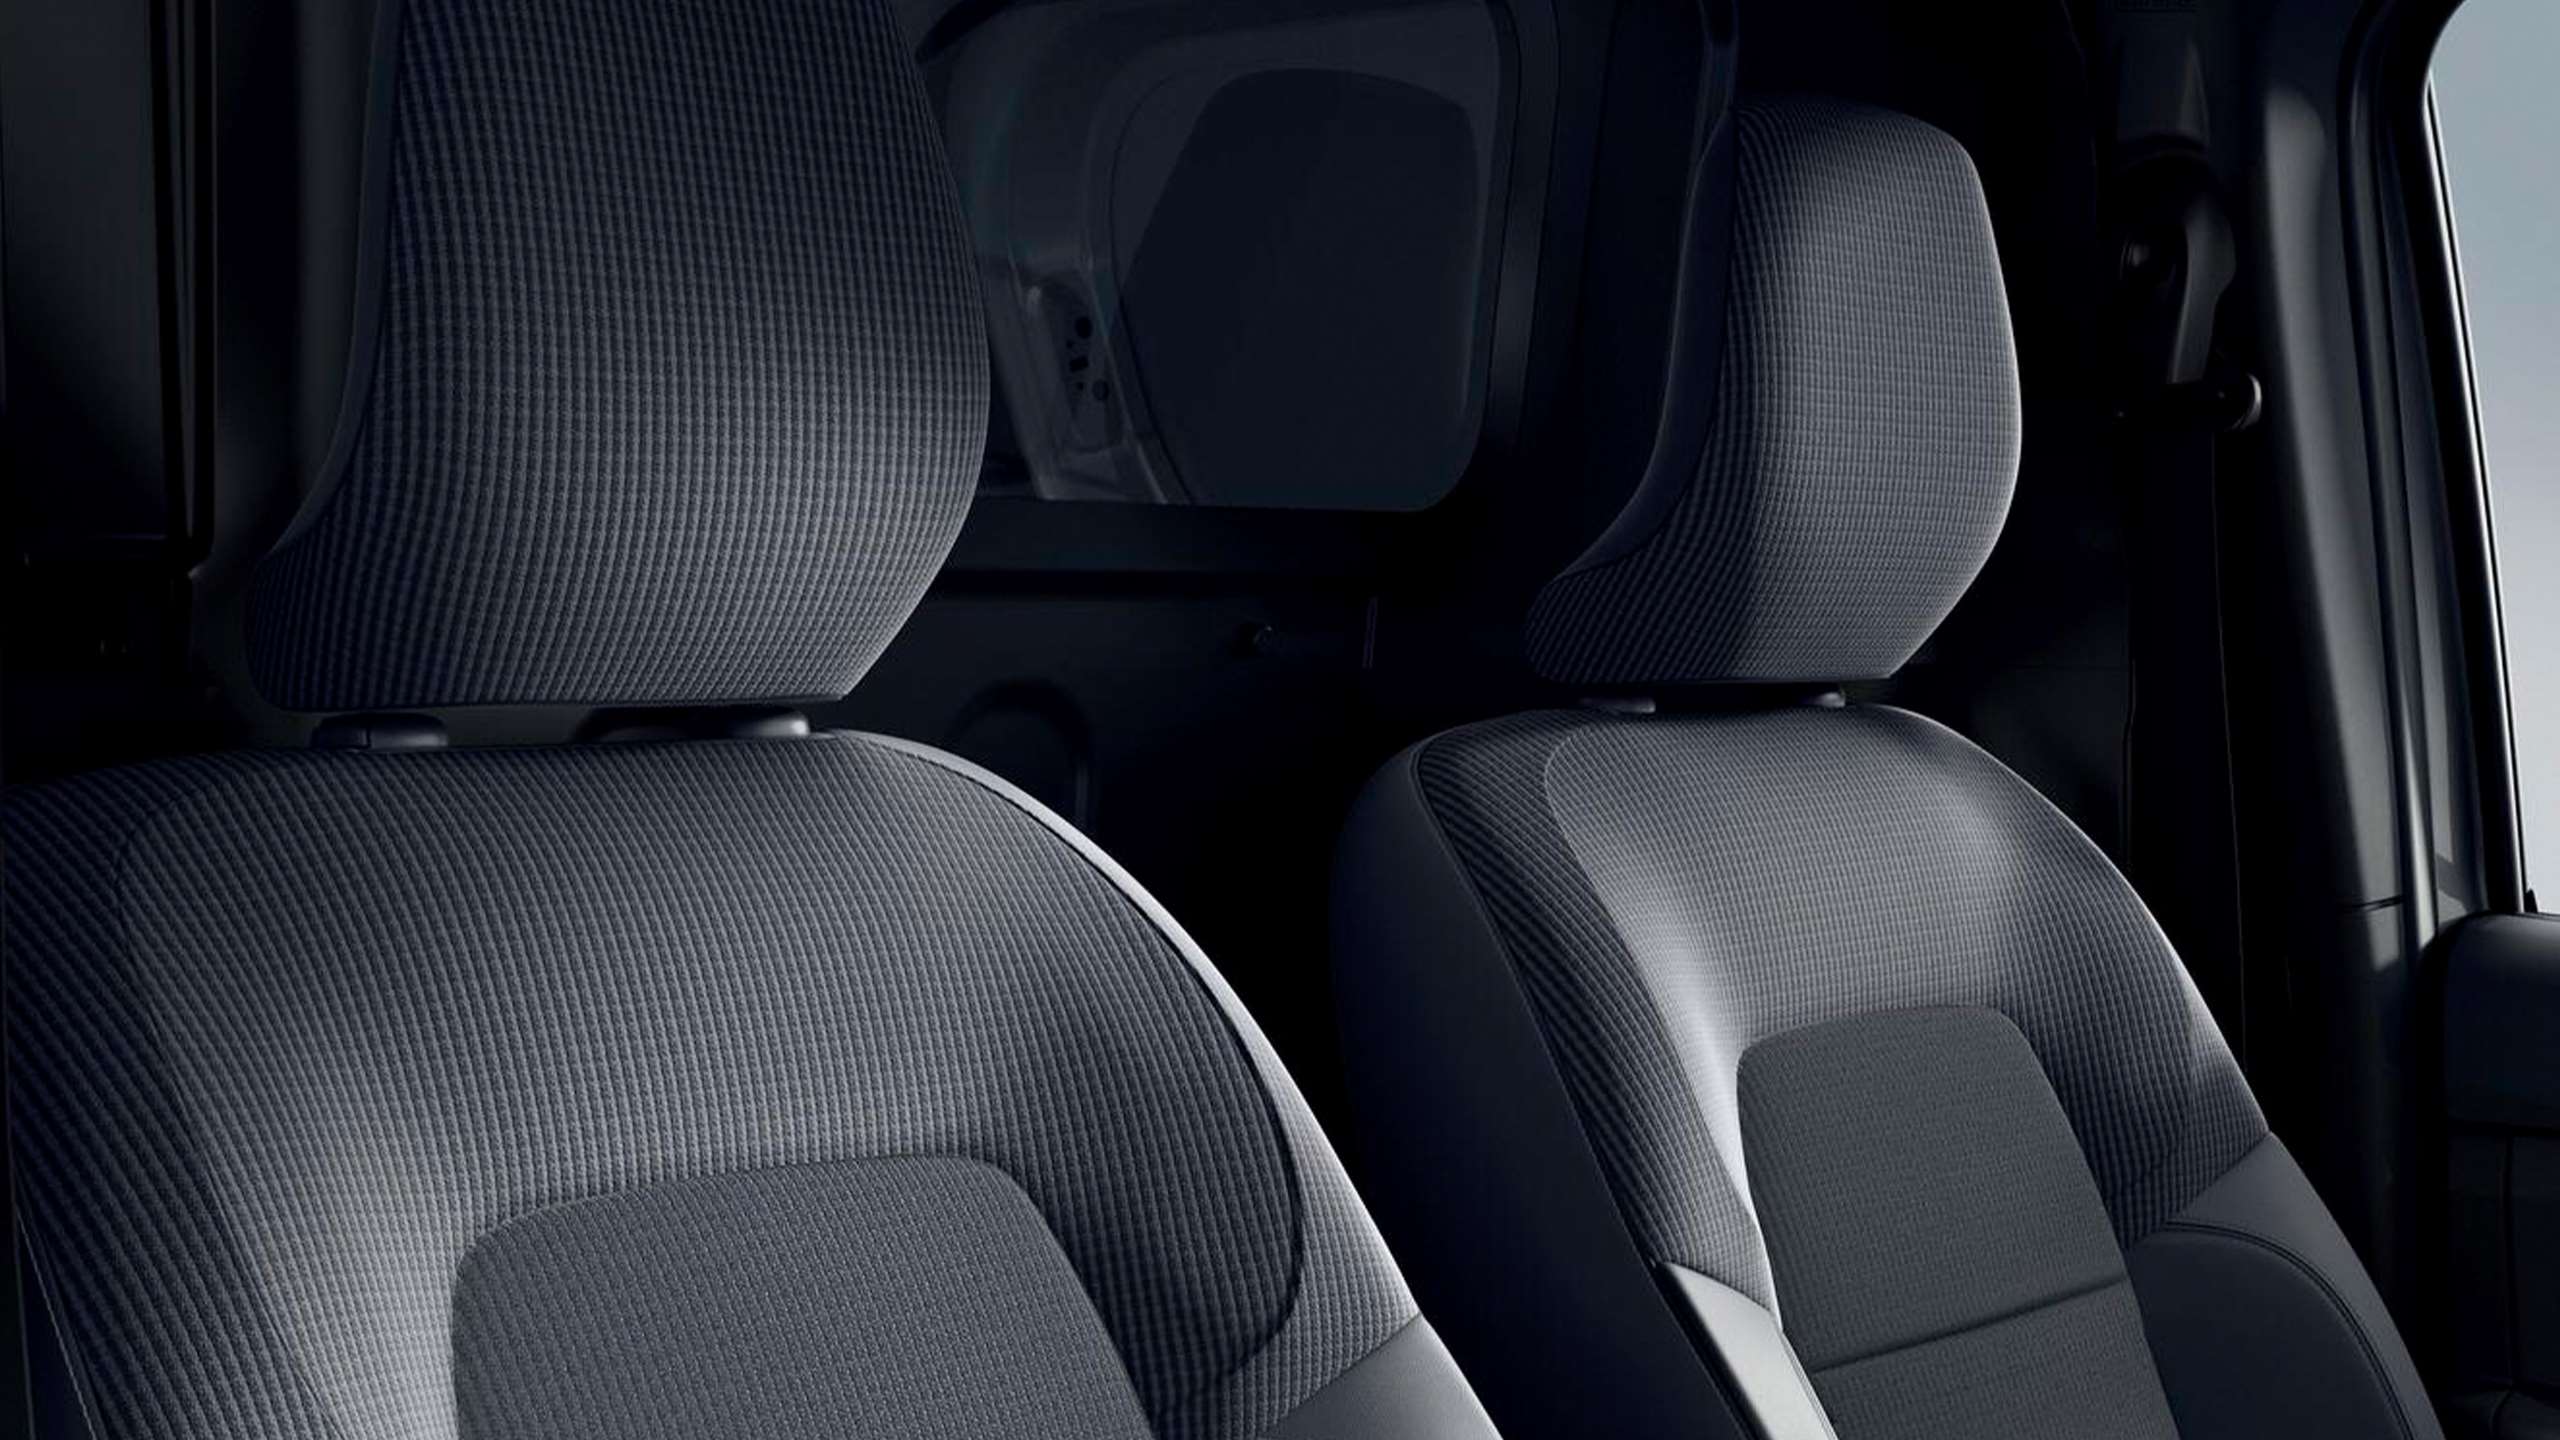 konforlu ve ergonomik koltuklar - Yeni Express Van'ın güçlendirilmiş koltukları tüm koşullarda sürüş konforu sağlar.